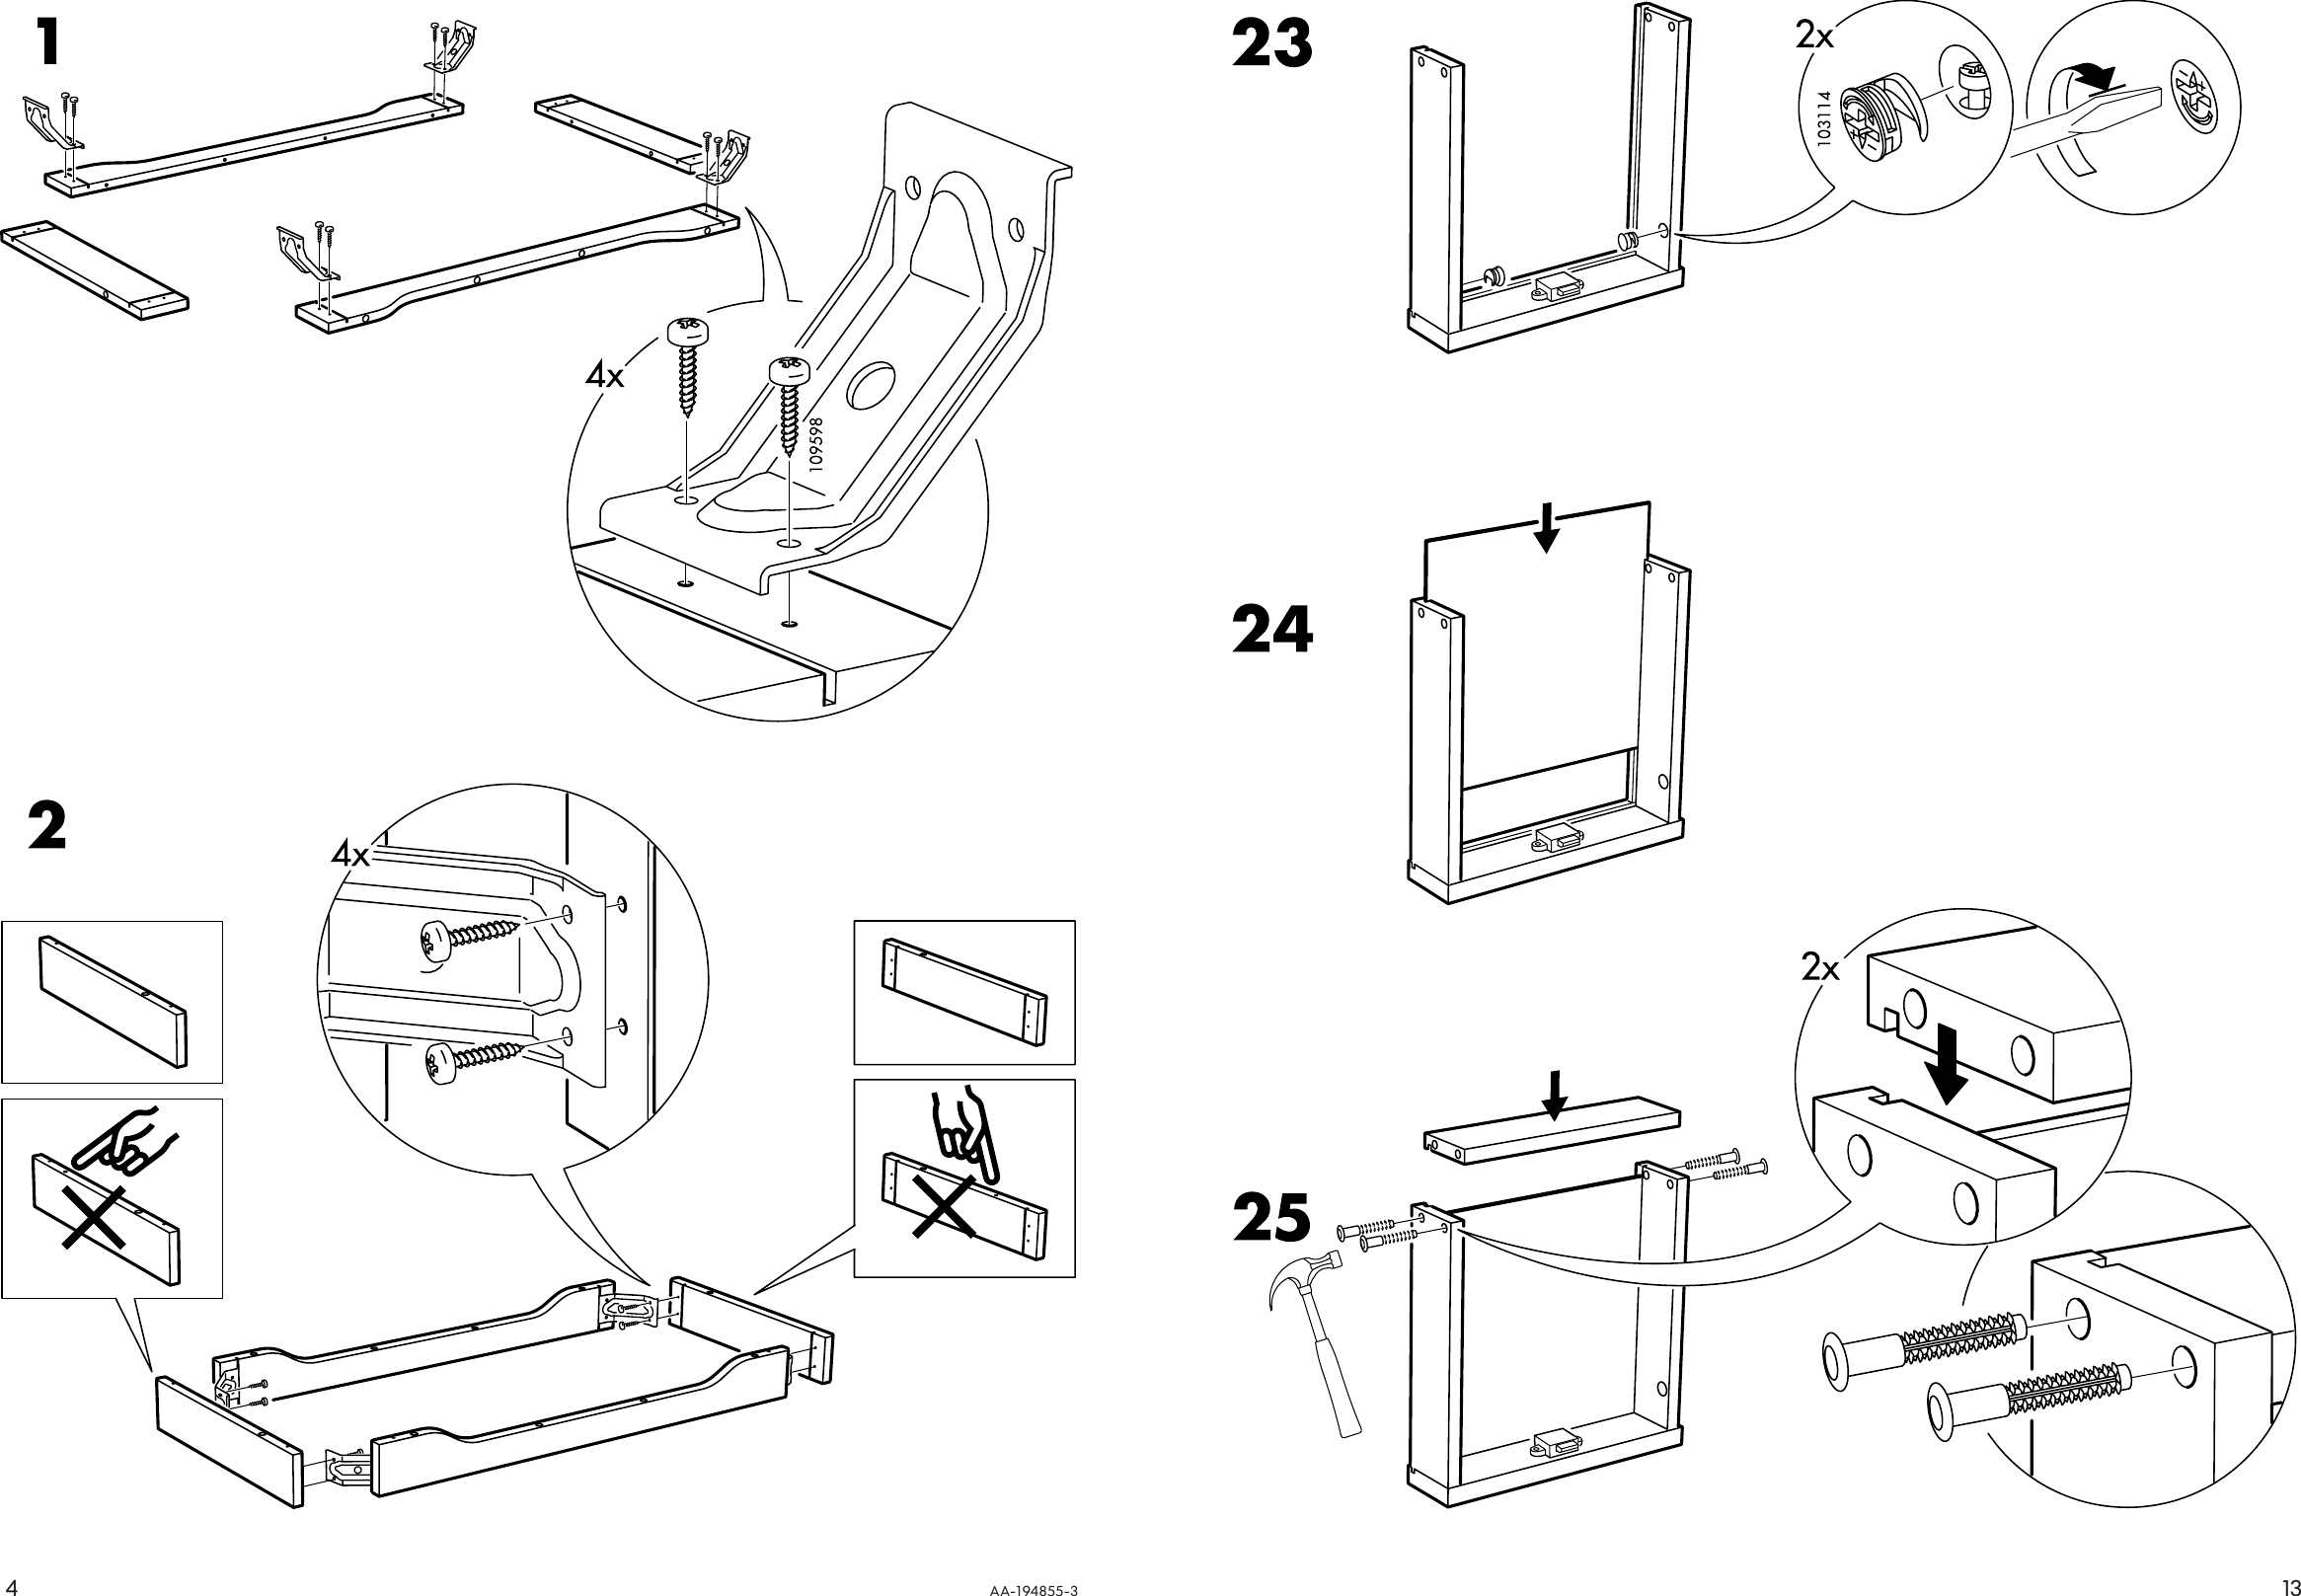 Page 4 of 8 - Ikea Ikea-Gustav-Desk-Shlf-Unit-43X24-Assembly-Instruction